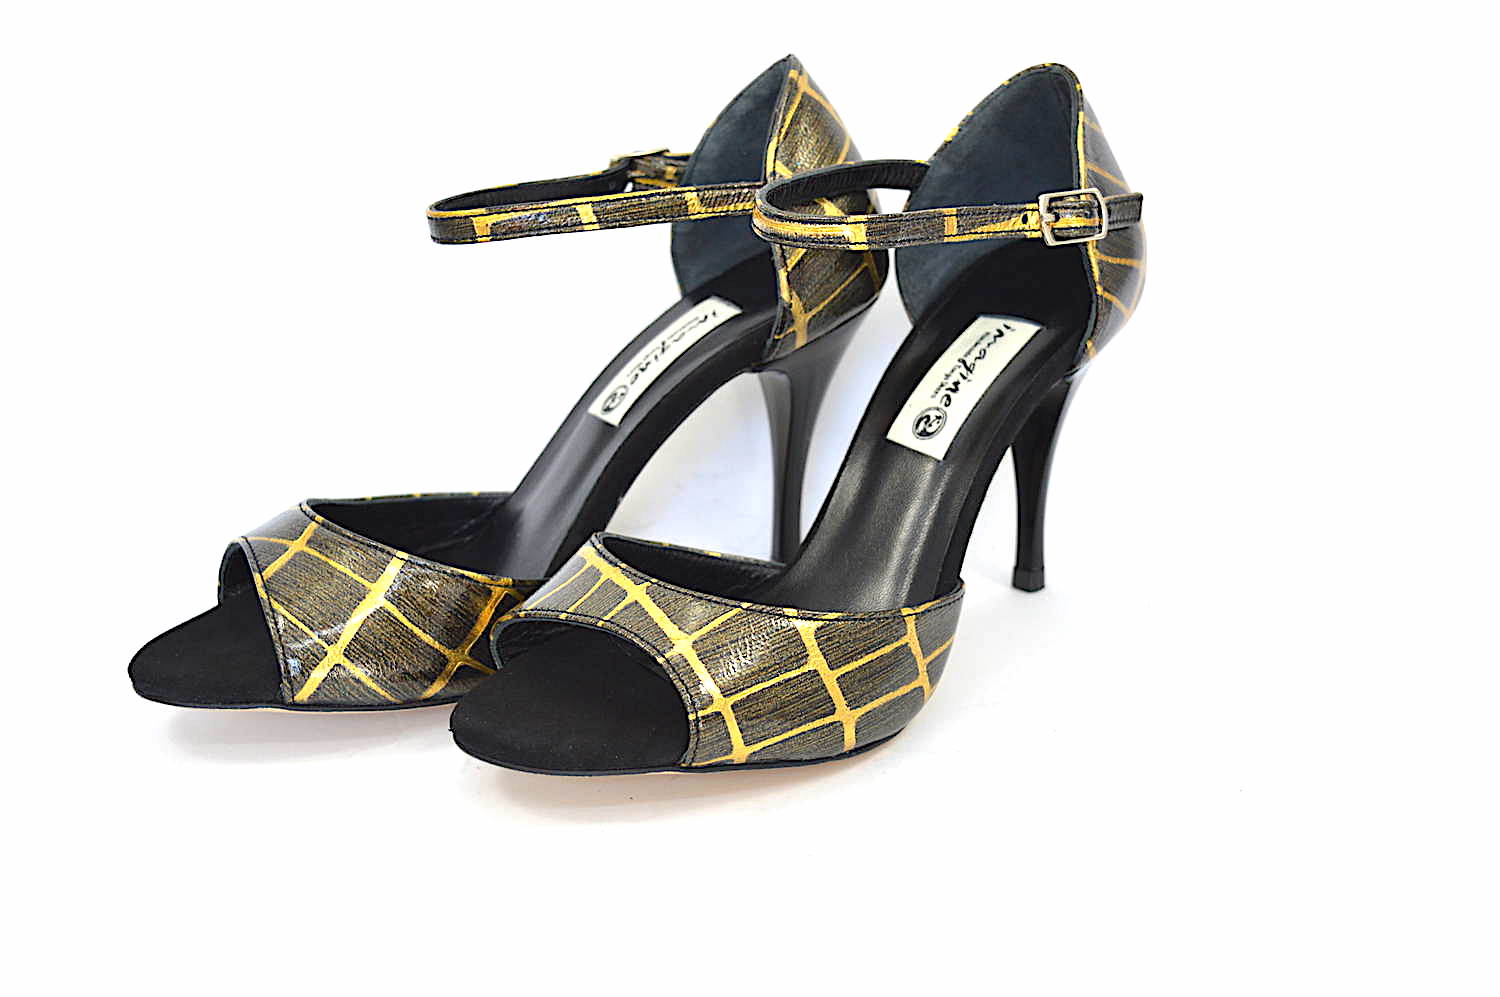 Γυναικείο παπούτσι χορού tango, open toe από πολύ ιδιαίτερο χρυσό-καφέ δέρμα και μαύρο σουέτ δέρμα